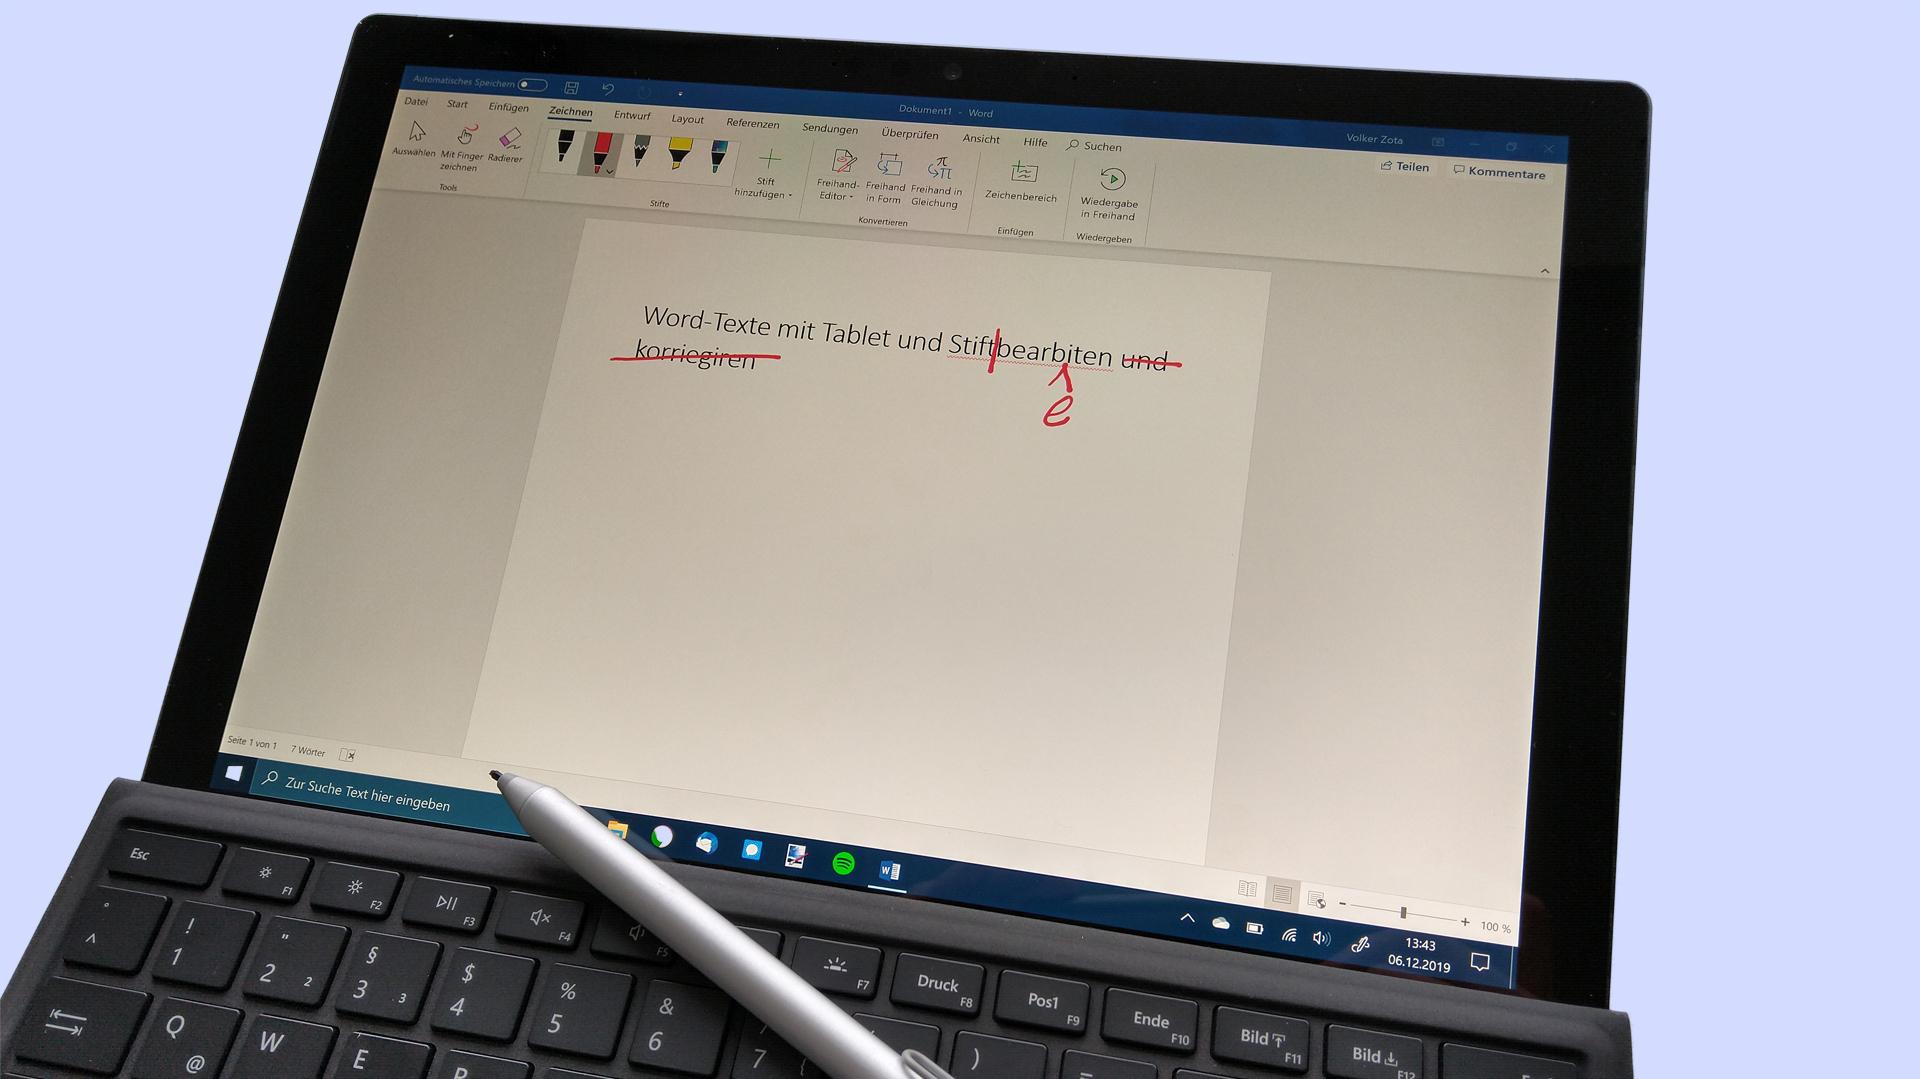 Word Texte Mit Tablet Und Stift Bearbeiten Heise Online